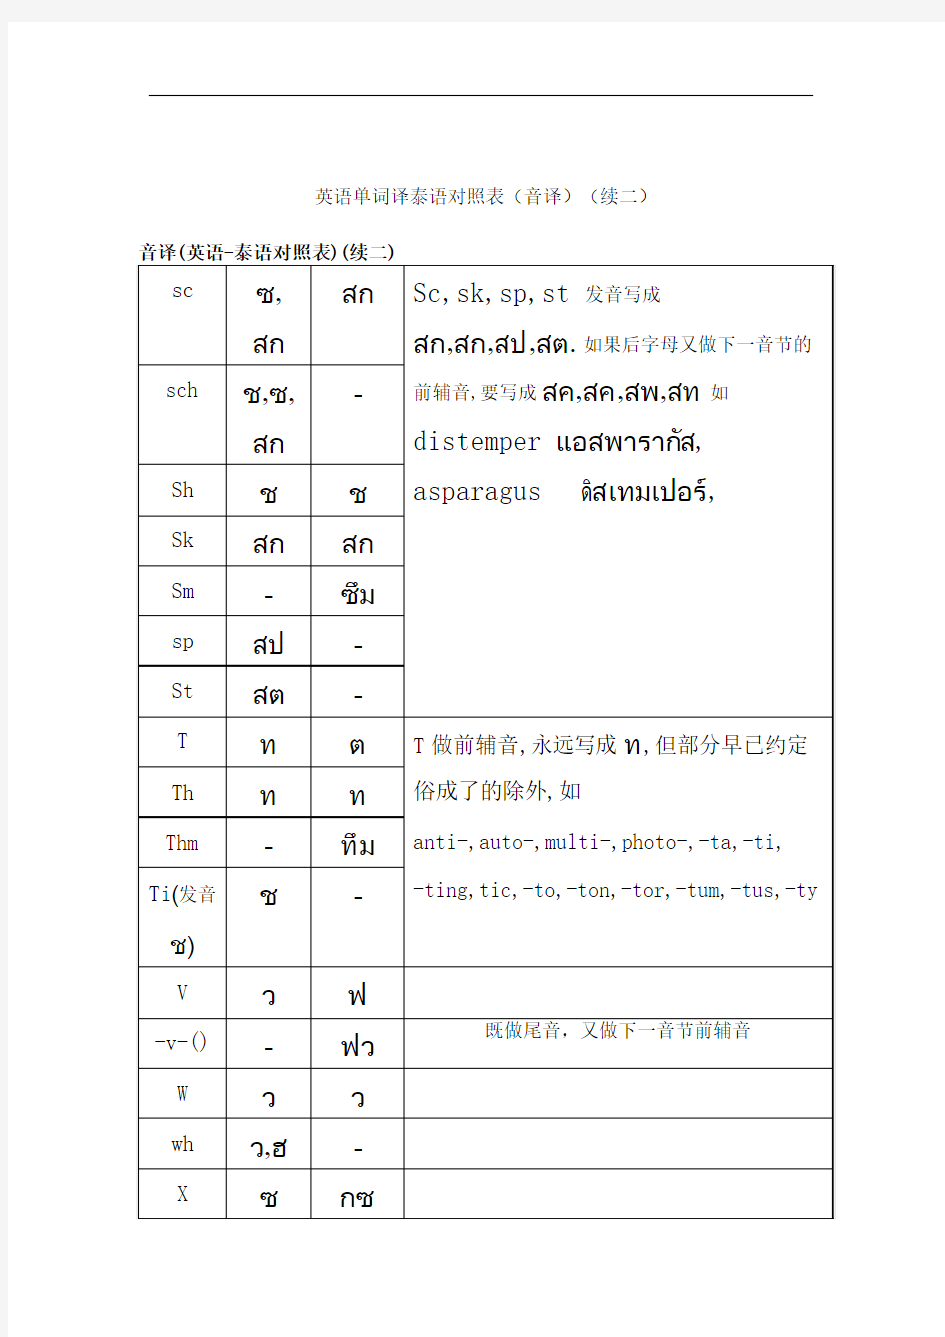 英语单词译泰语对照表